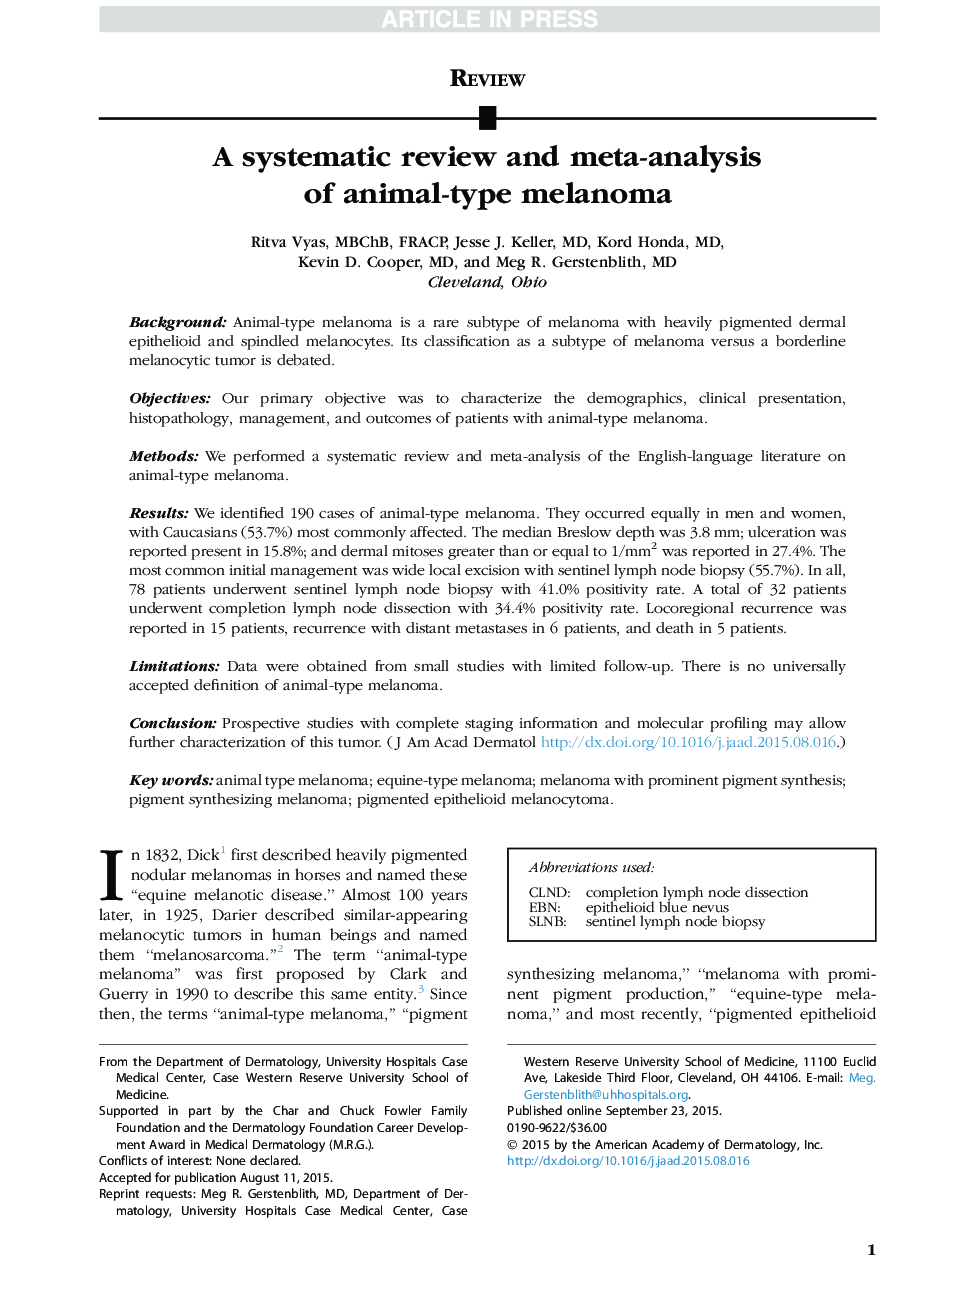 یک بررسی سیستماتیک و متاآنالیز ملانوم نوع حیوانی 